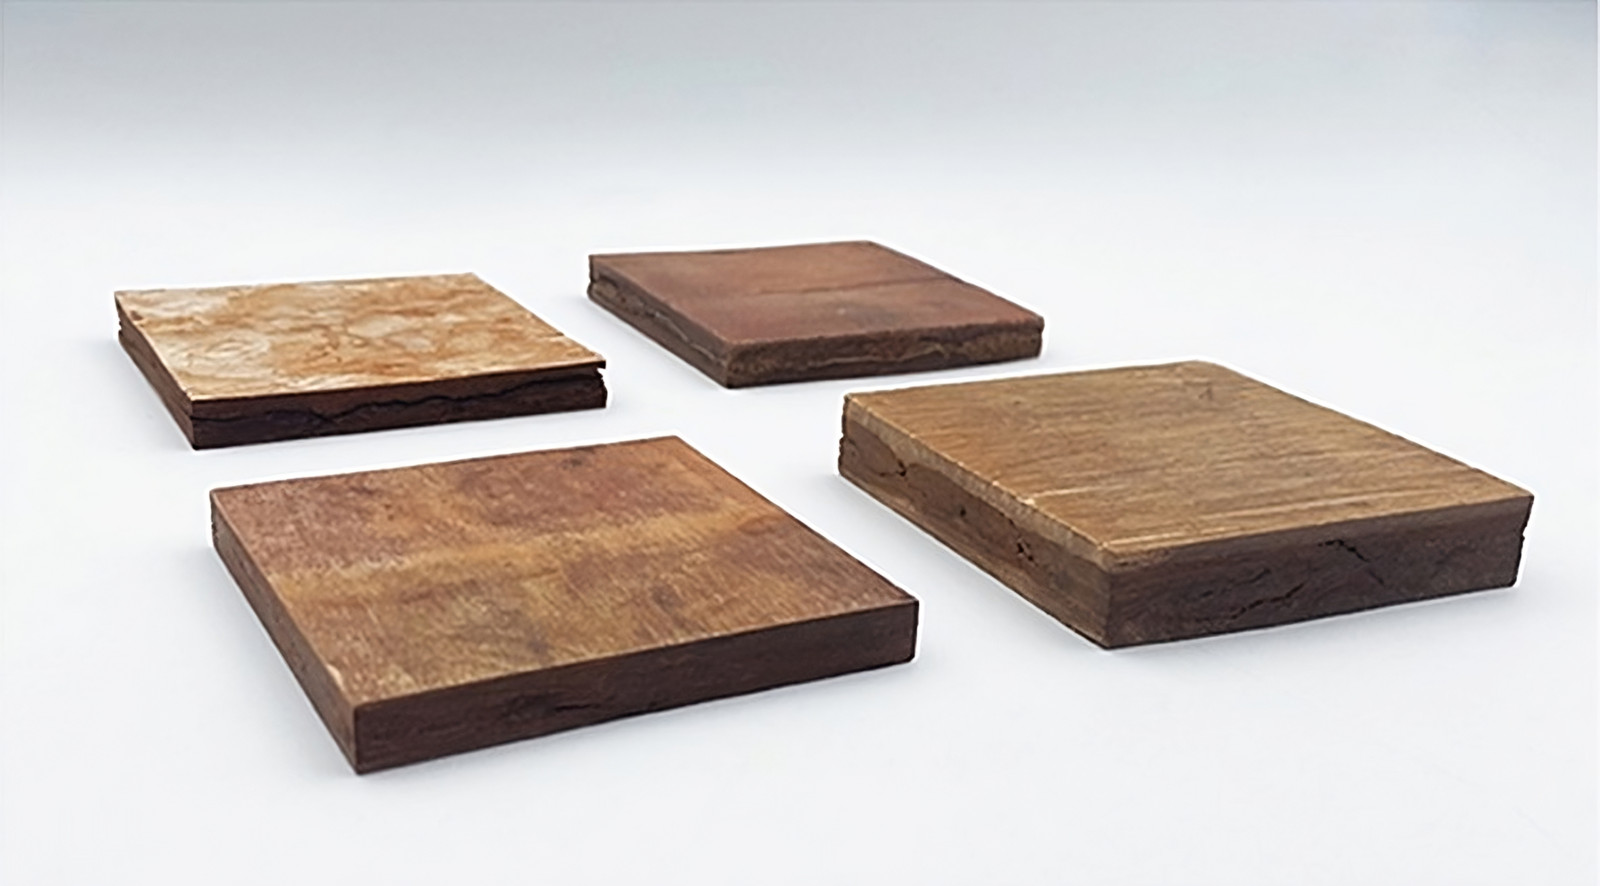 Baumrinden-Platten verschiedenen Holzes (von oben links nach unten rechts): Kiefer, Birke, Lärche, Eiche.